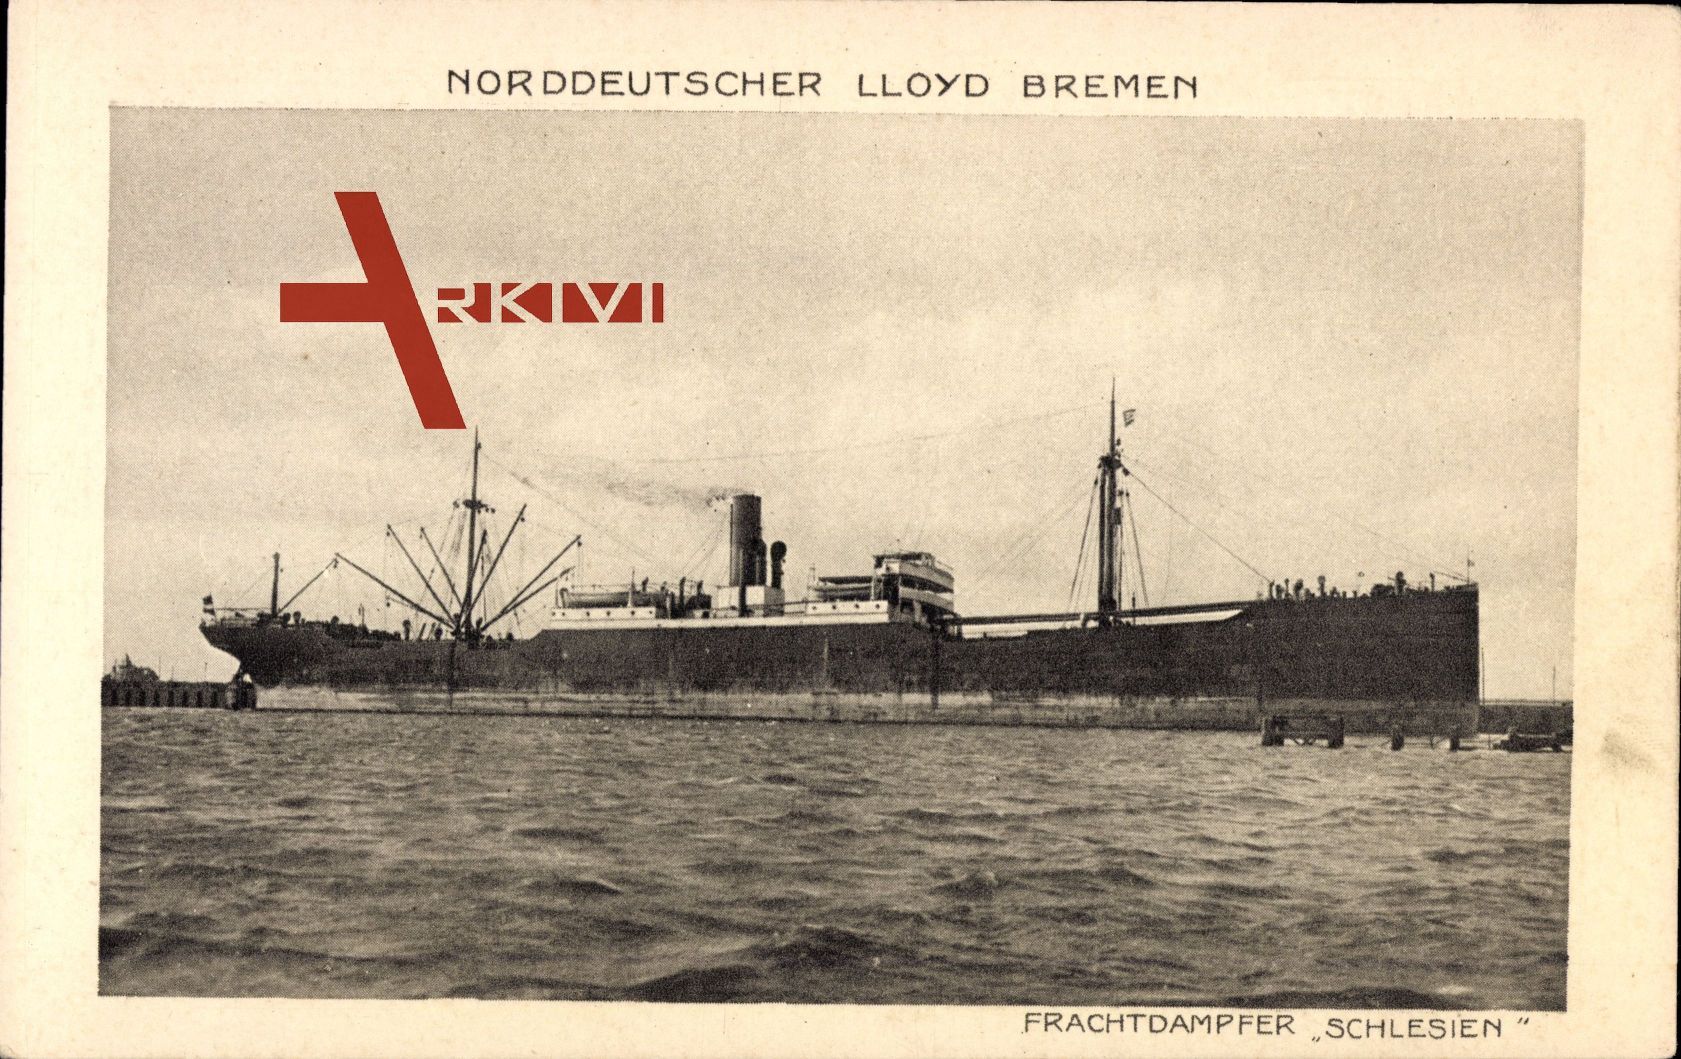 Norddeutscher Lloyd Bremen, Frachtdampfer Schlesien